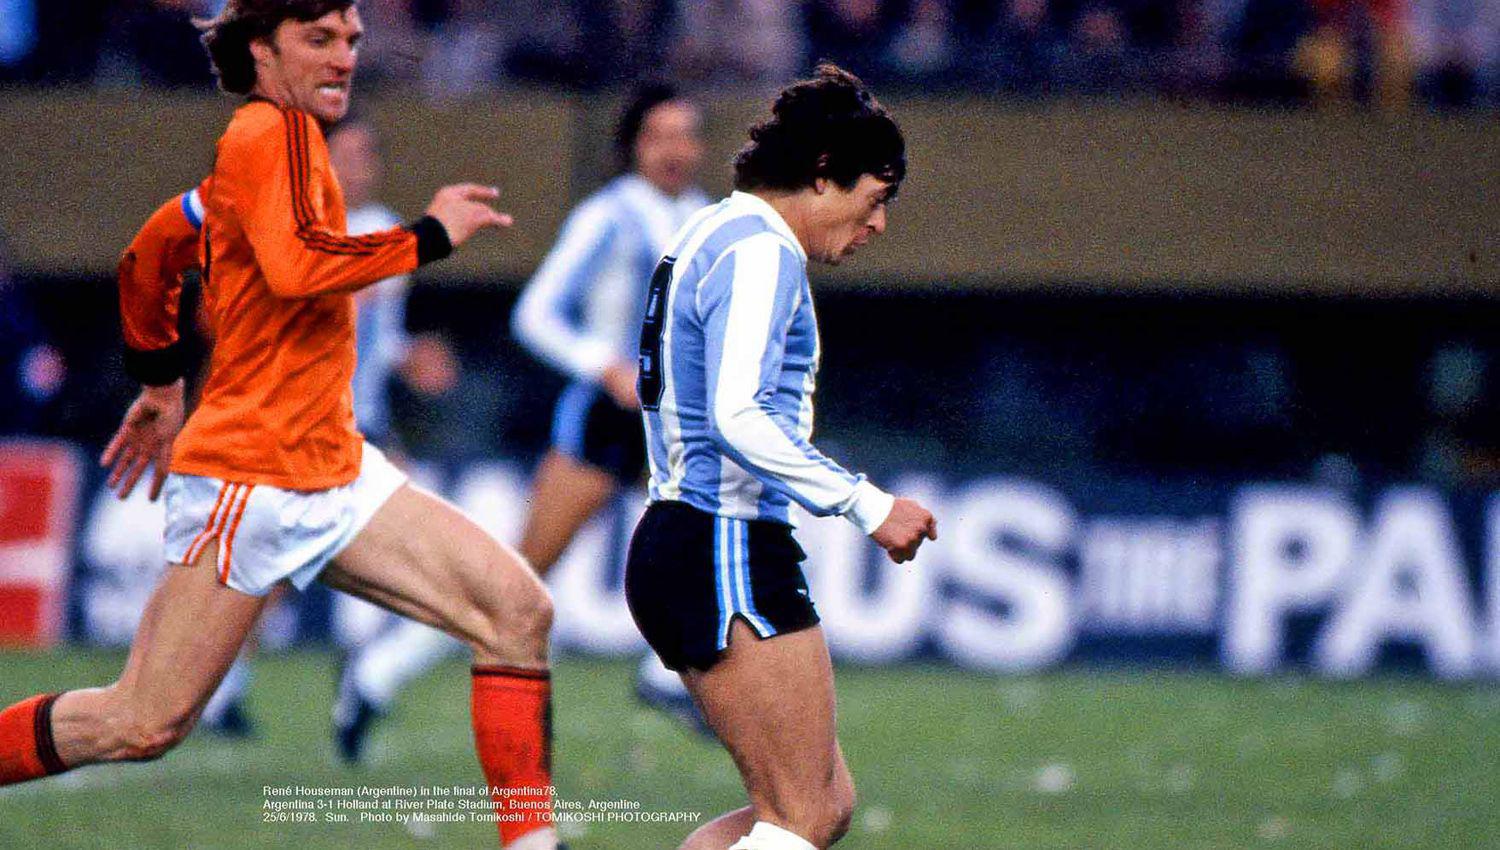 El santiagueño René Houseman en el segundo tiempo de la final entre Argentina y Holanda Im�genes- Masahide Tomikoshi